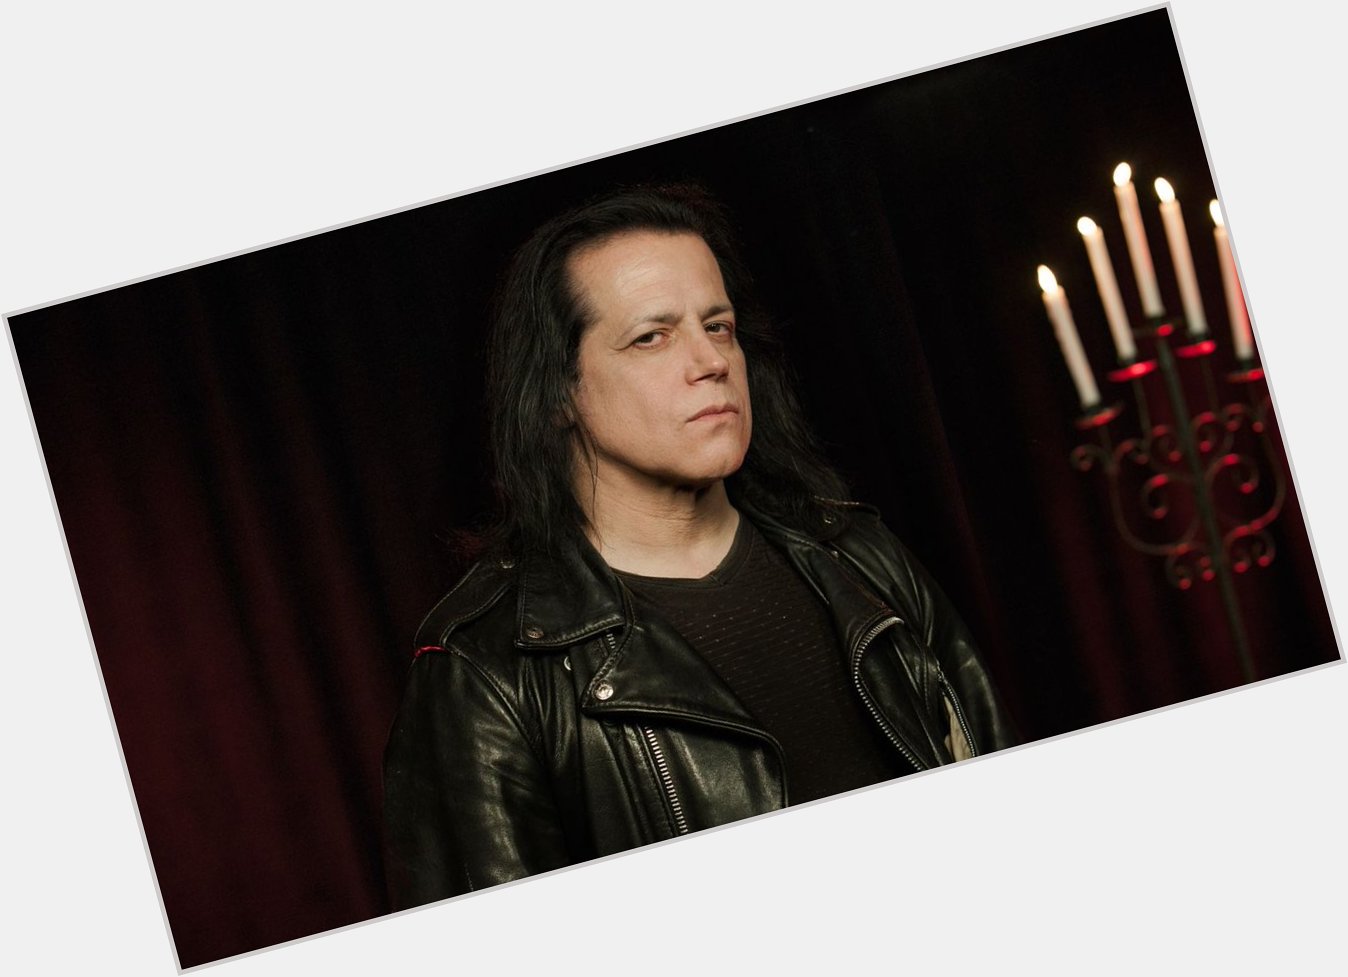 Happy Birthday Glenn Danzig!   